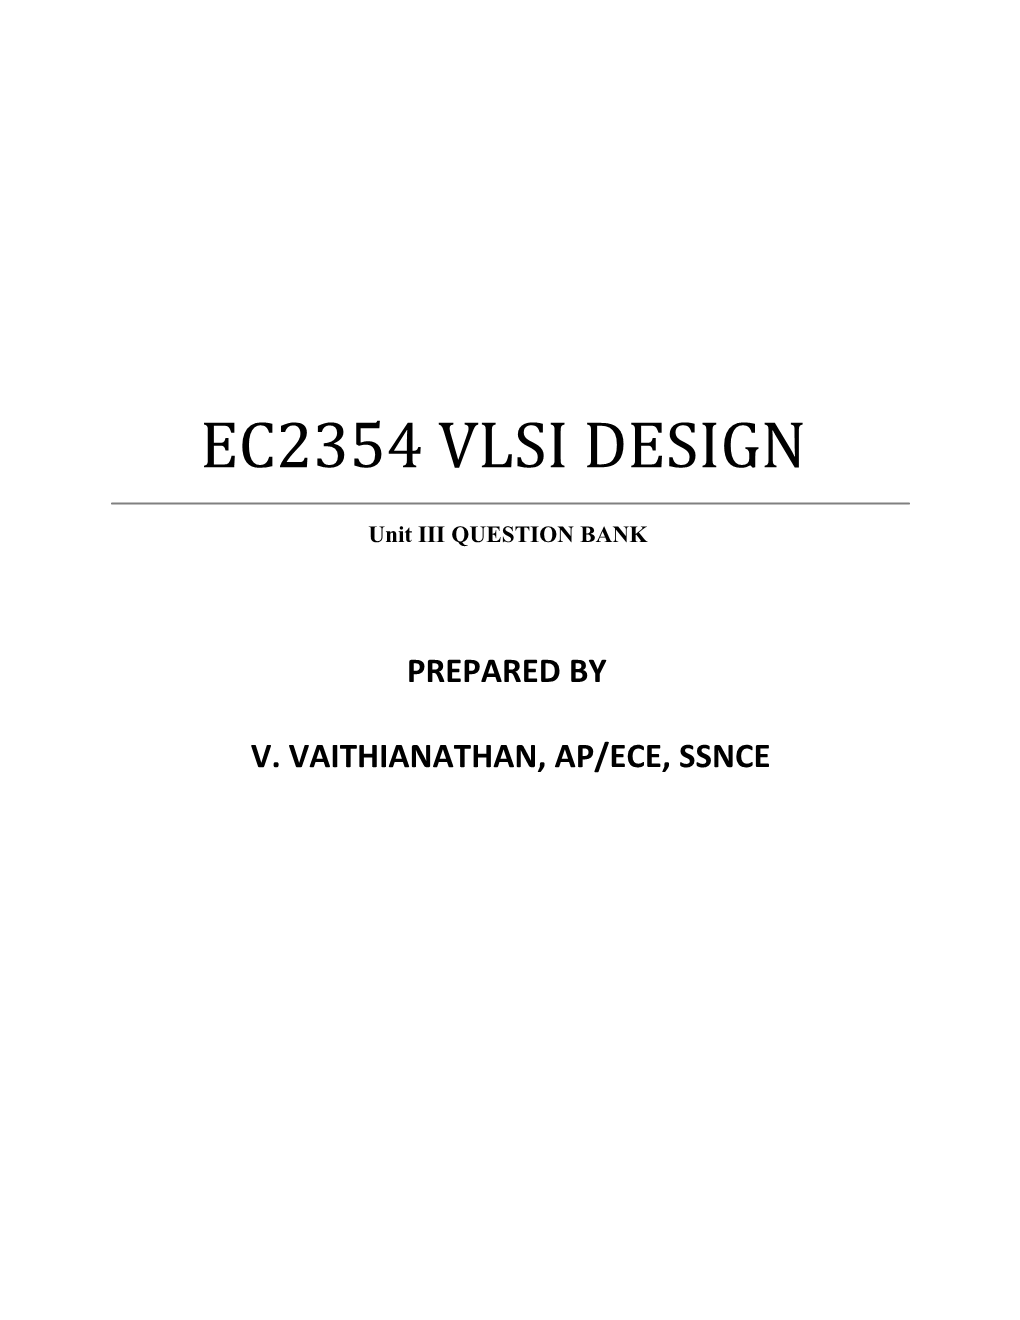 V. Vaithianathan, Ap/Ece, Ssnce